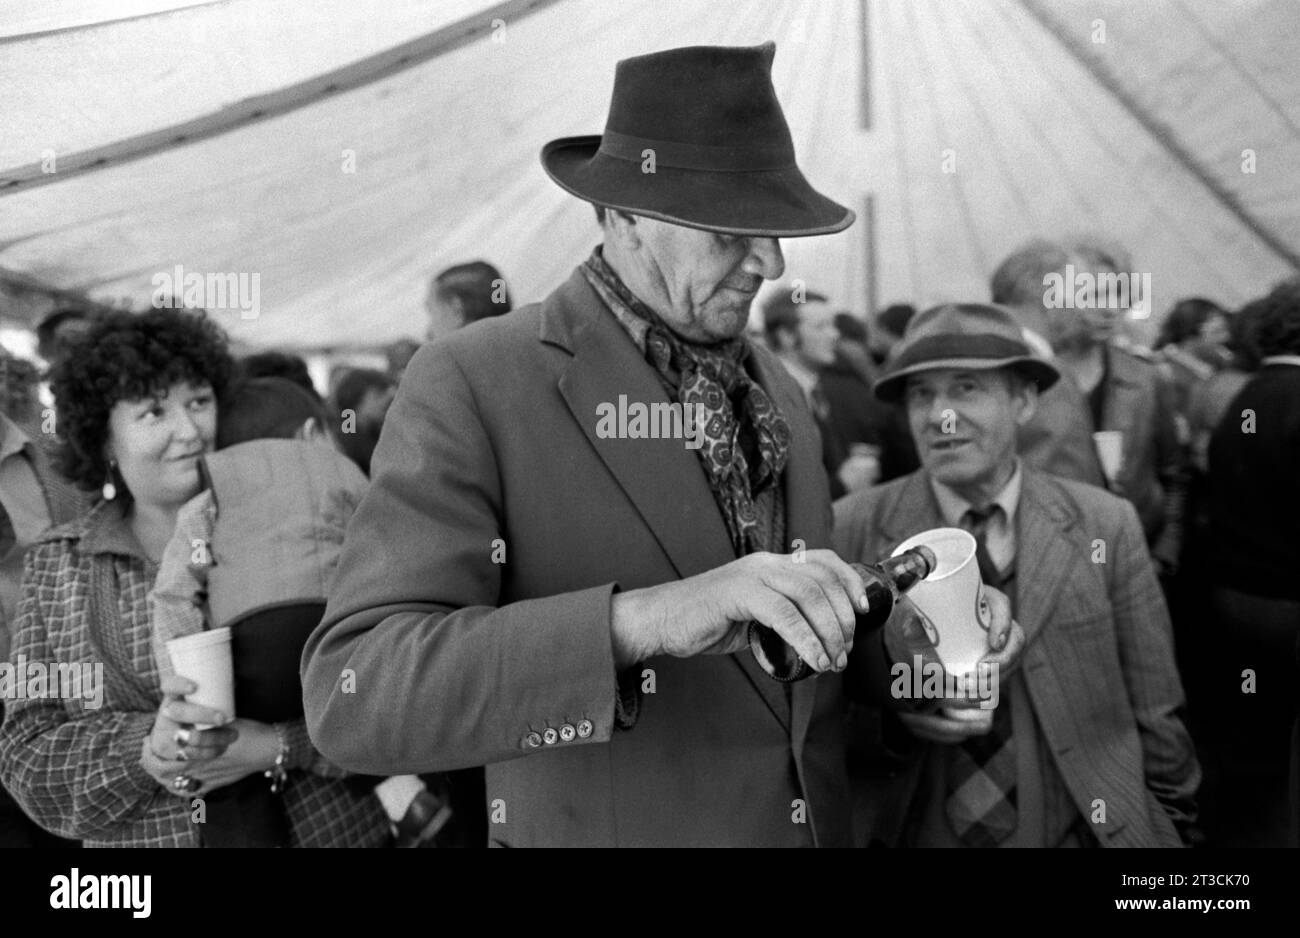 Tente de bière, ses tziganes bondés buvant à la fin d'une journée. Appleby dans Westmorland gitan cheval foire Cumbria, Angleterre juin 1981 1980s Royaume-Uni HOMER SYKES Banque D'Images